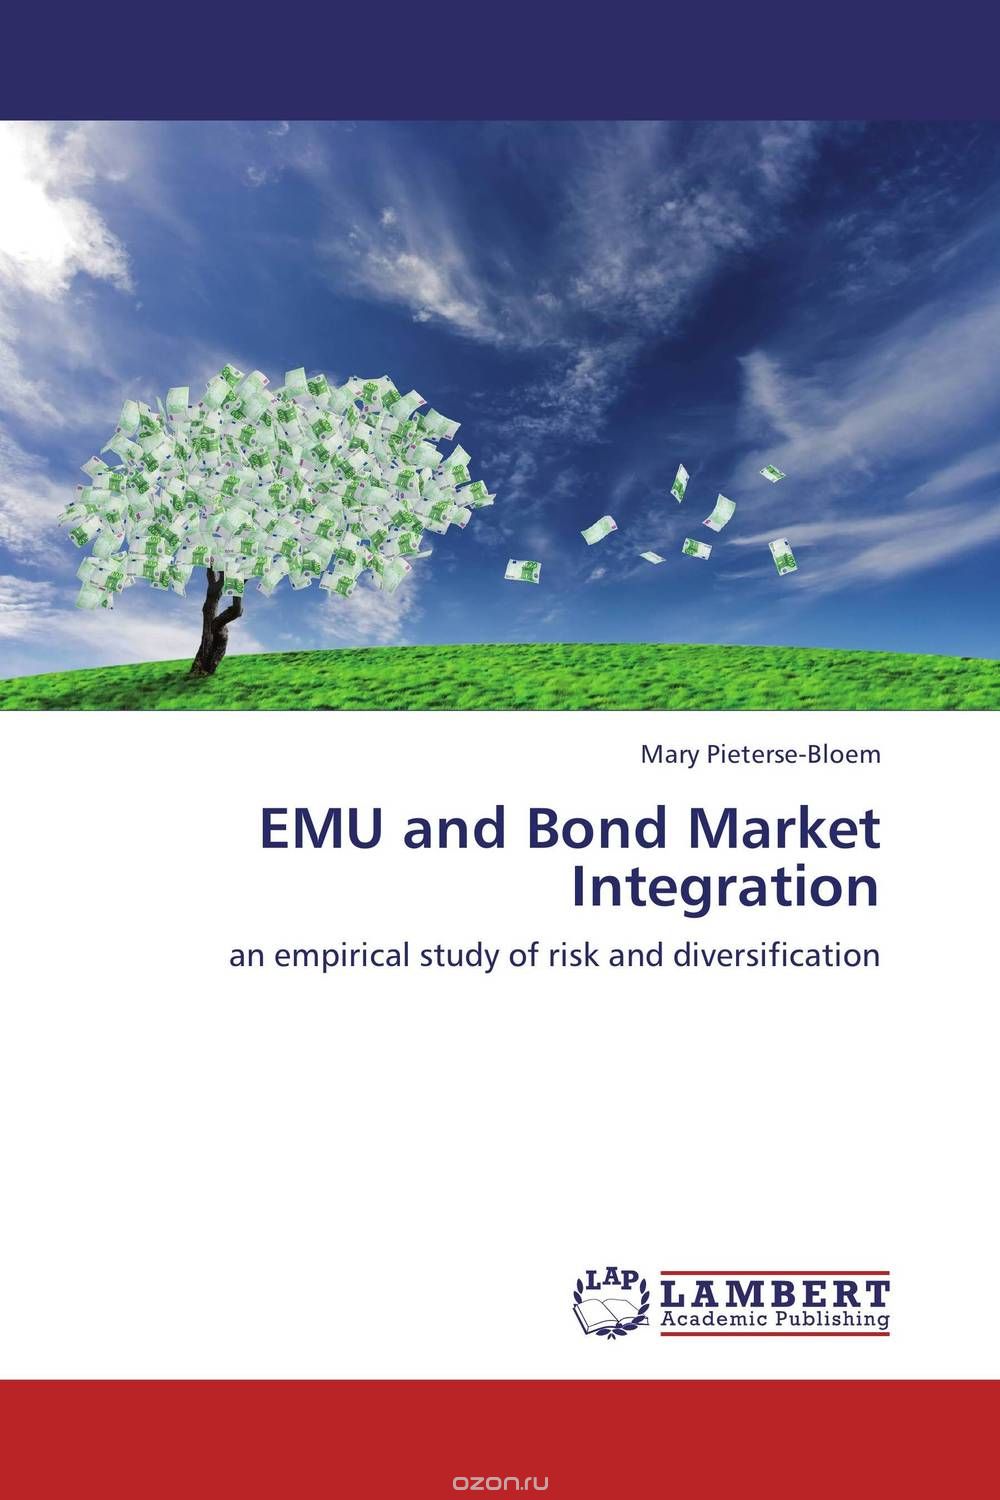 Скачать книгу "EMU and Bond Market Integration"